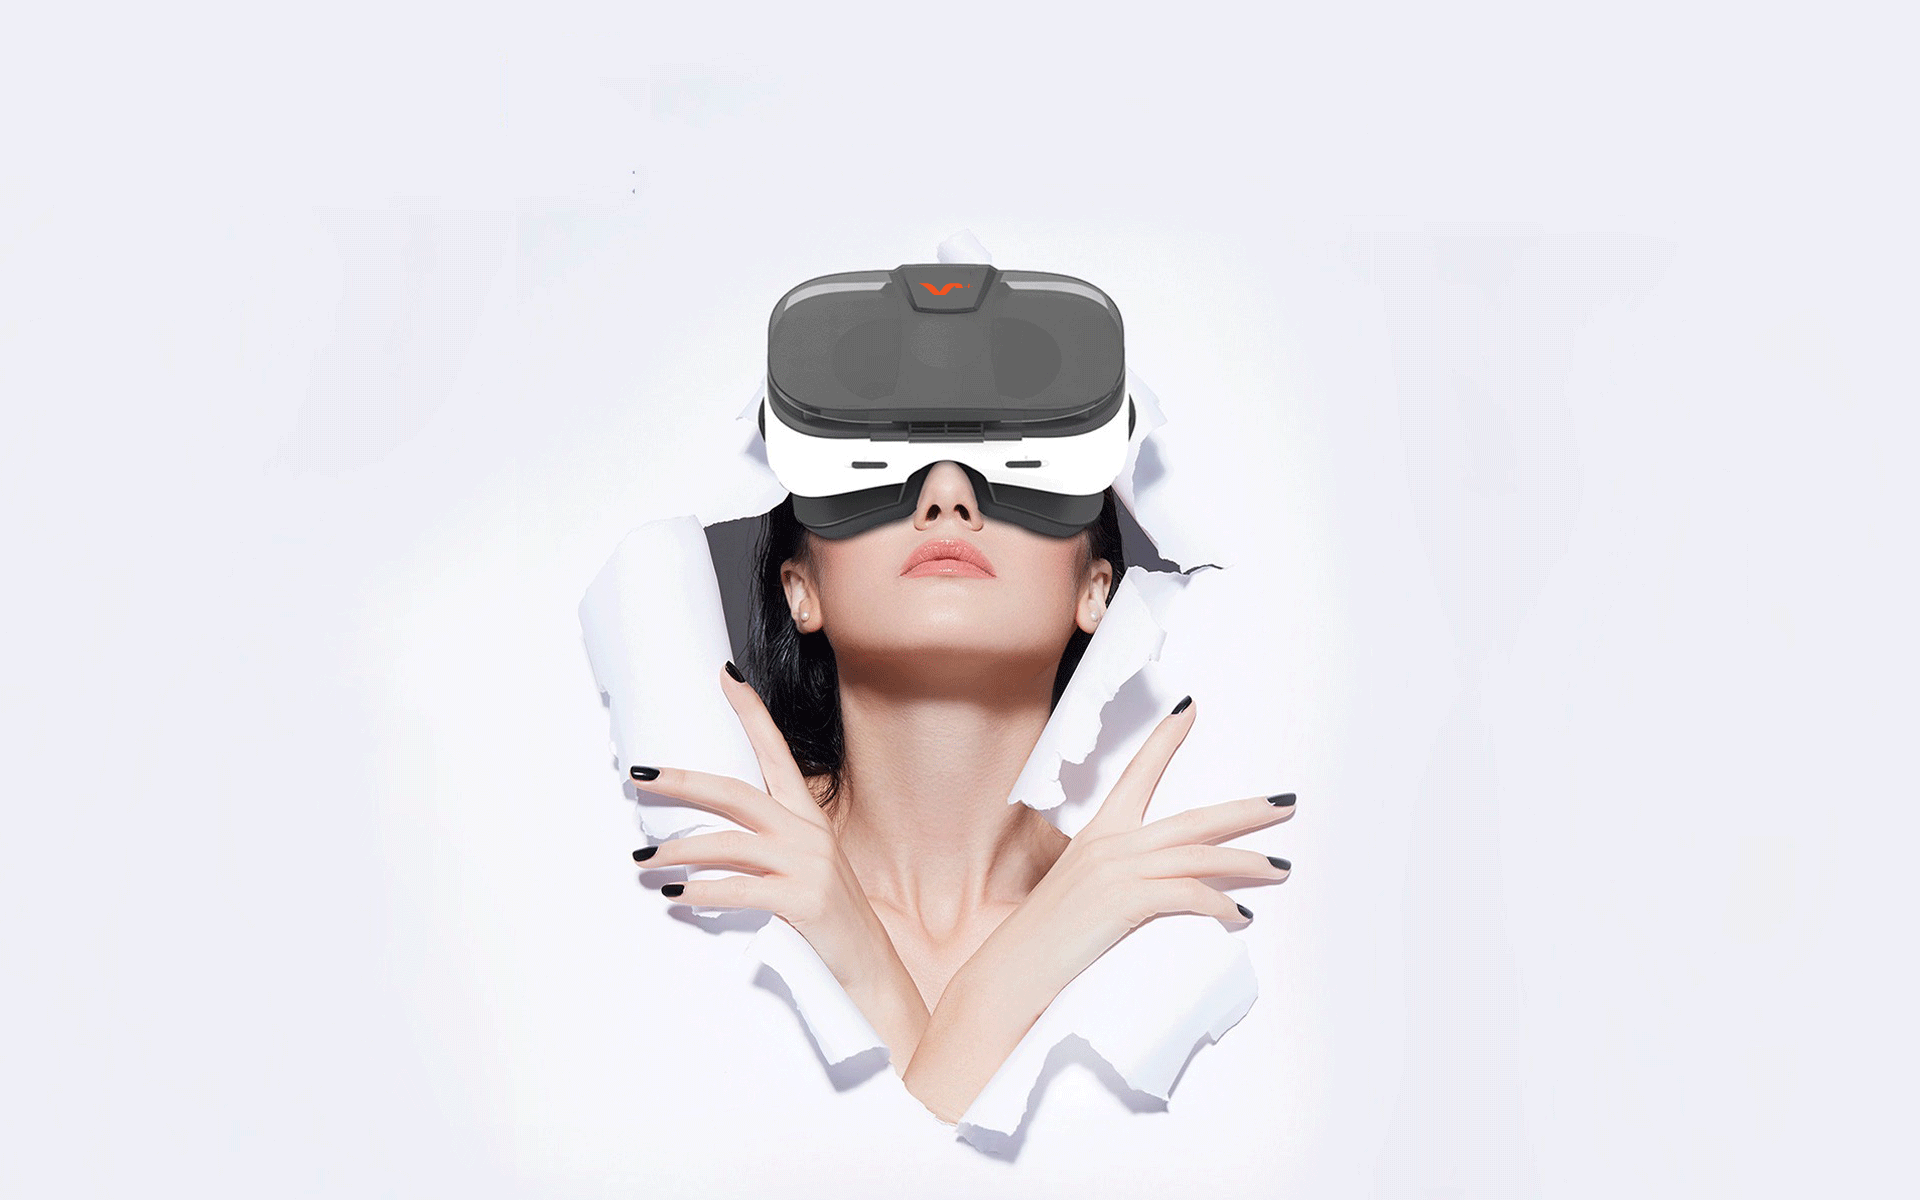 Картинка очки реальности. VR шлем 360max. Очки виртуальной реальности 360 VR. Шлем виртуальной реальности 3glasses s1. Девушка в очках виртуальной реальности.